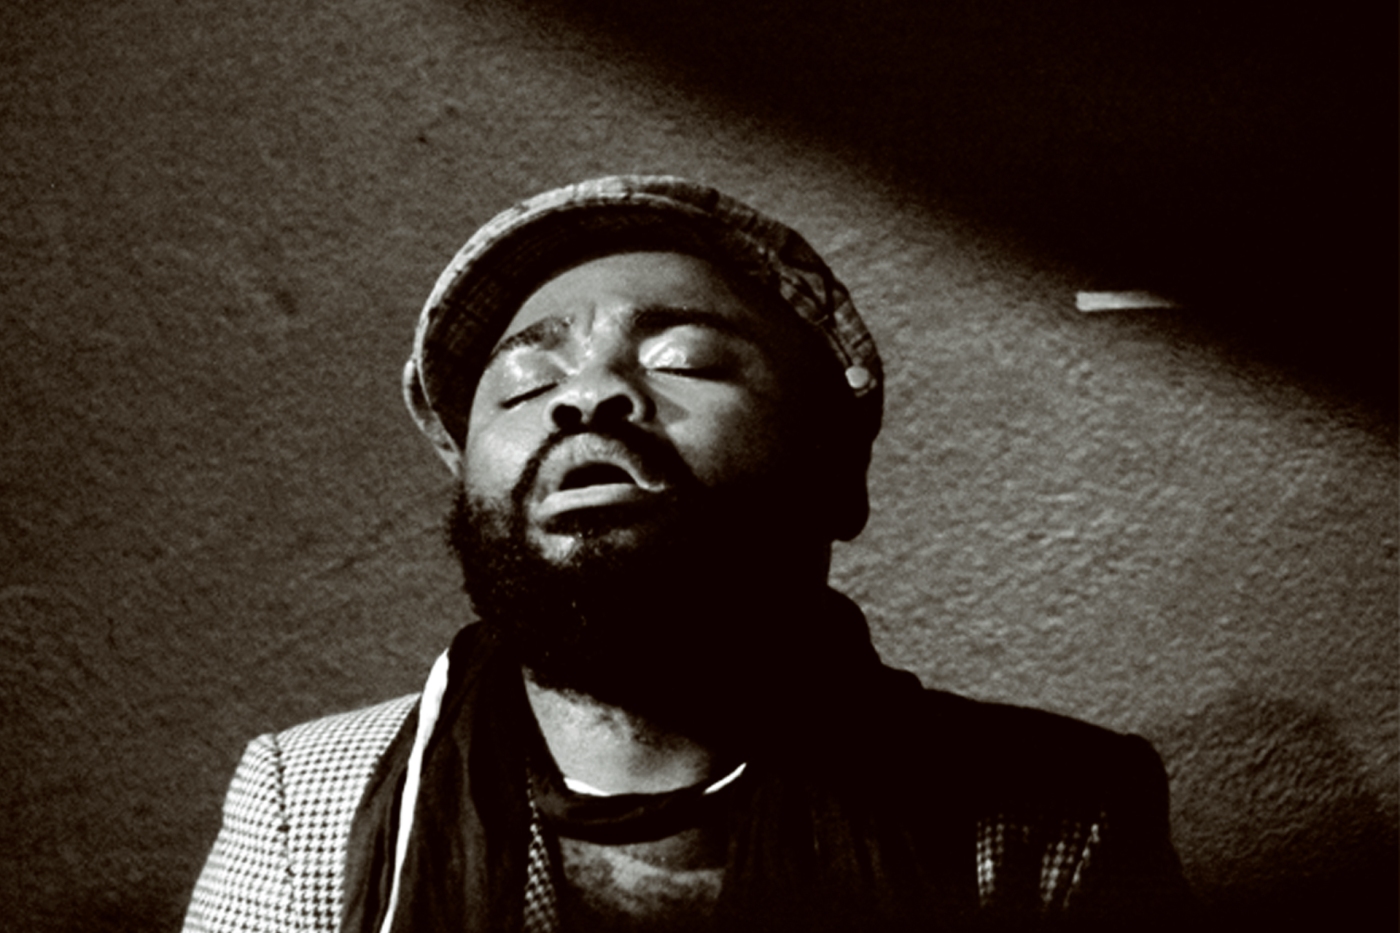 South African jazz musician ndudozo makhitini